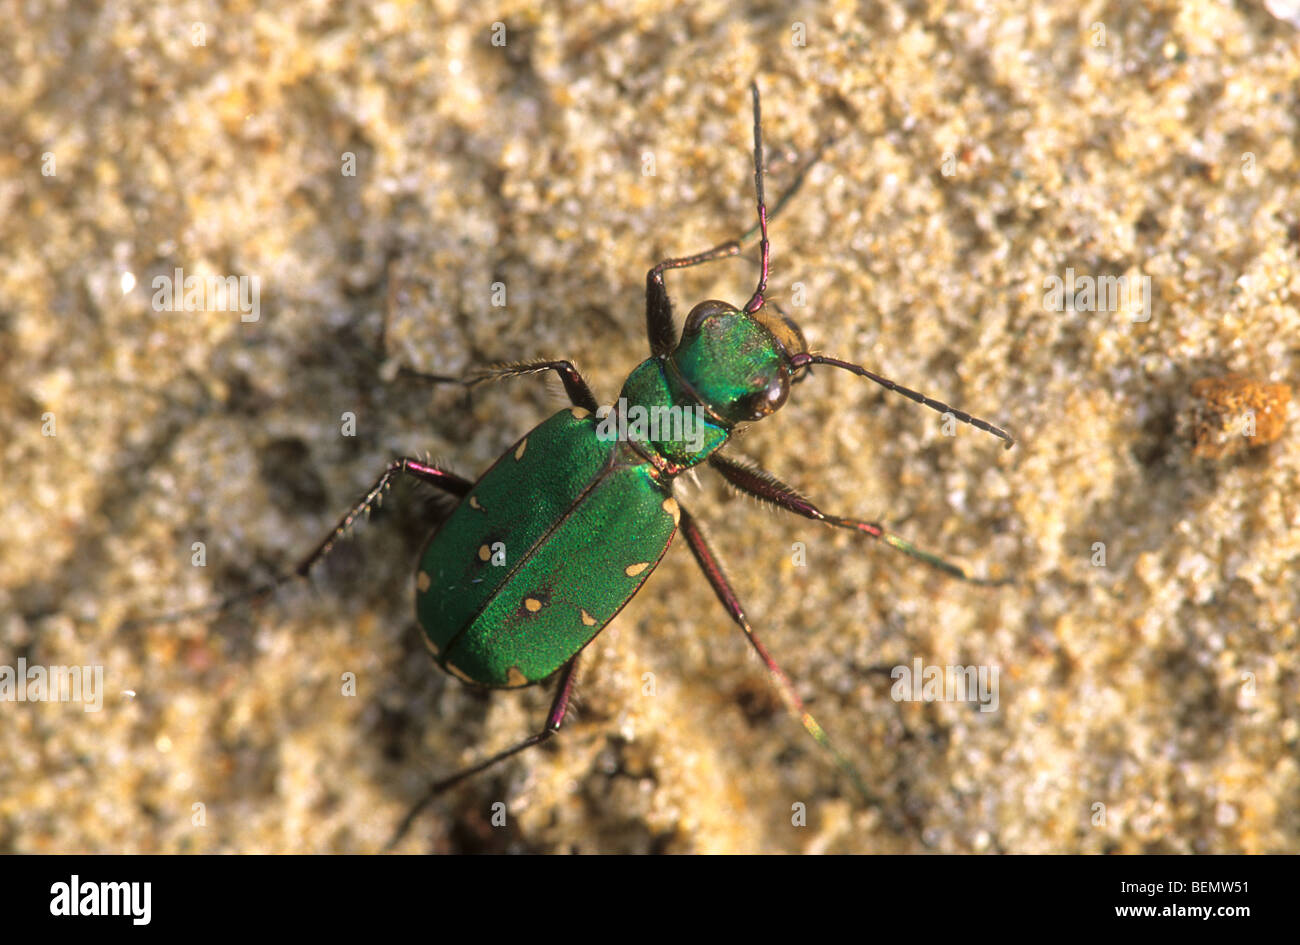 Green tiger beetle (Cicindela campestris) close-up portrait Stock Photo